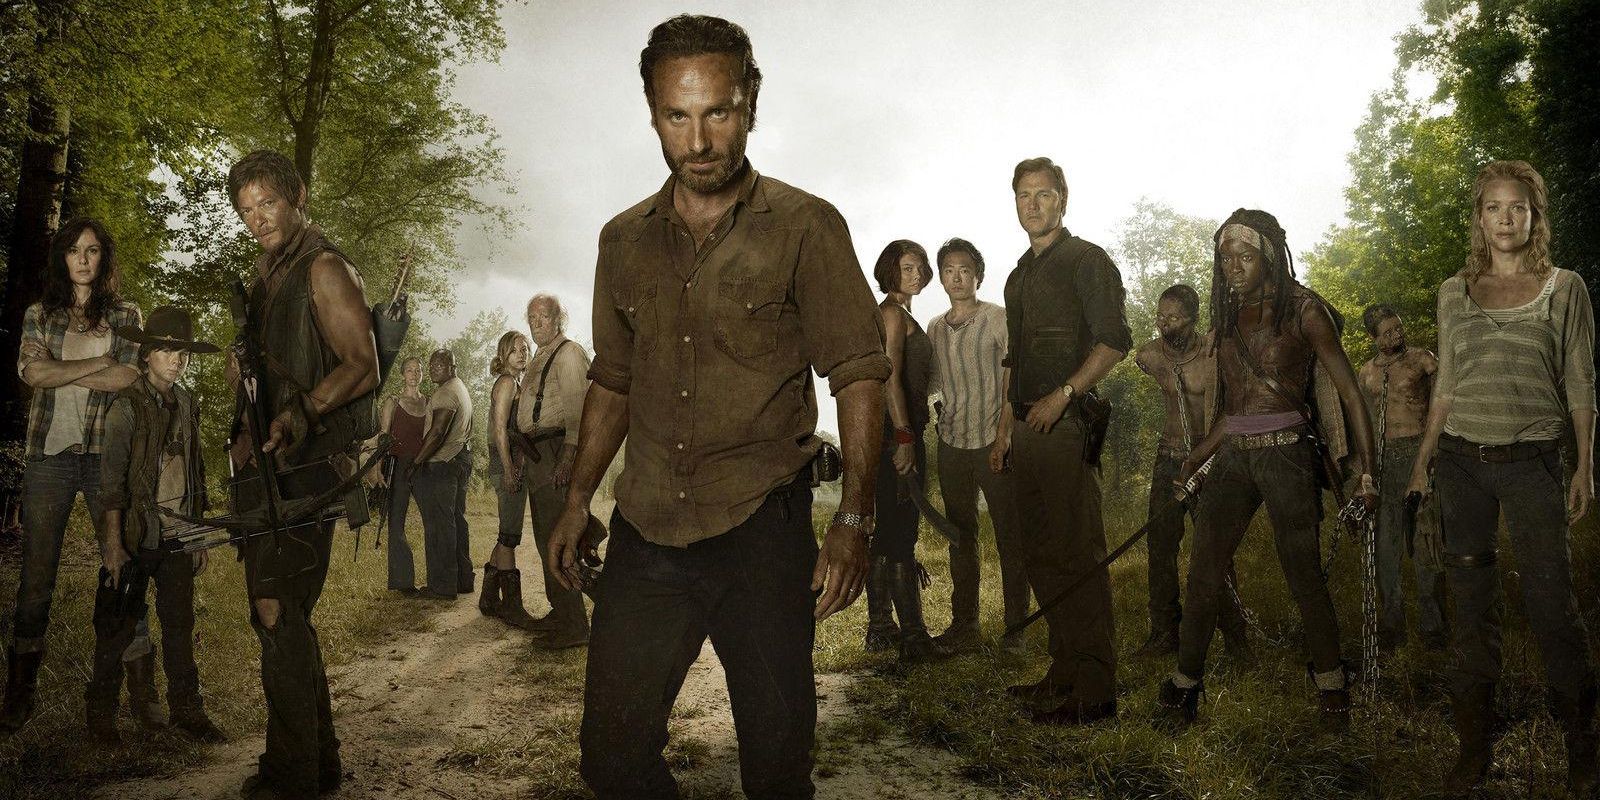 The Walking Dead season 3 cast poster